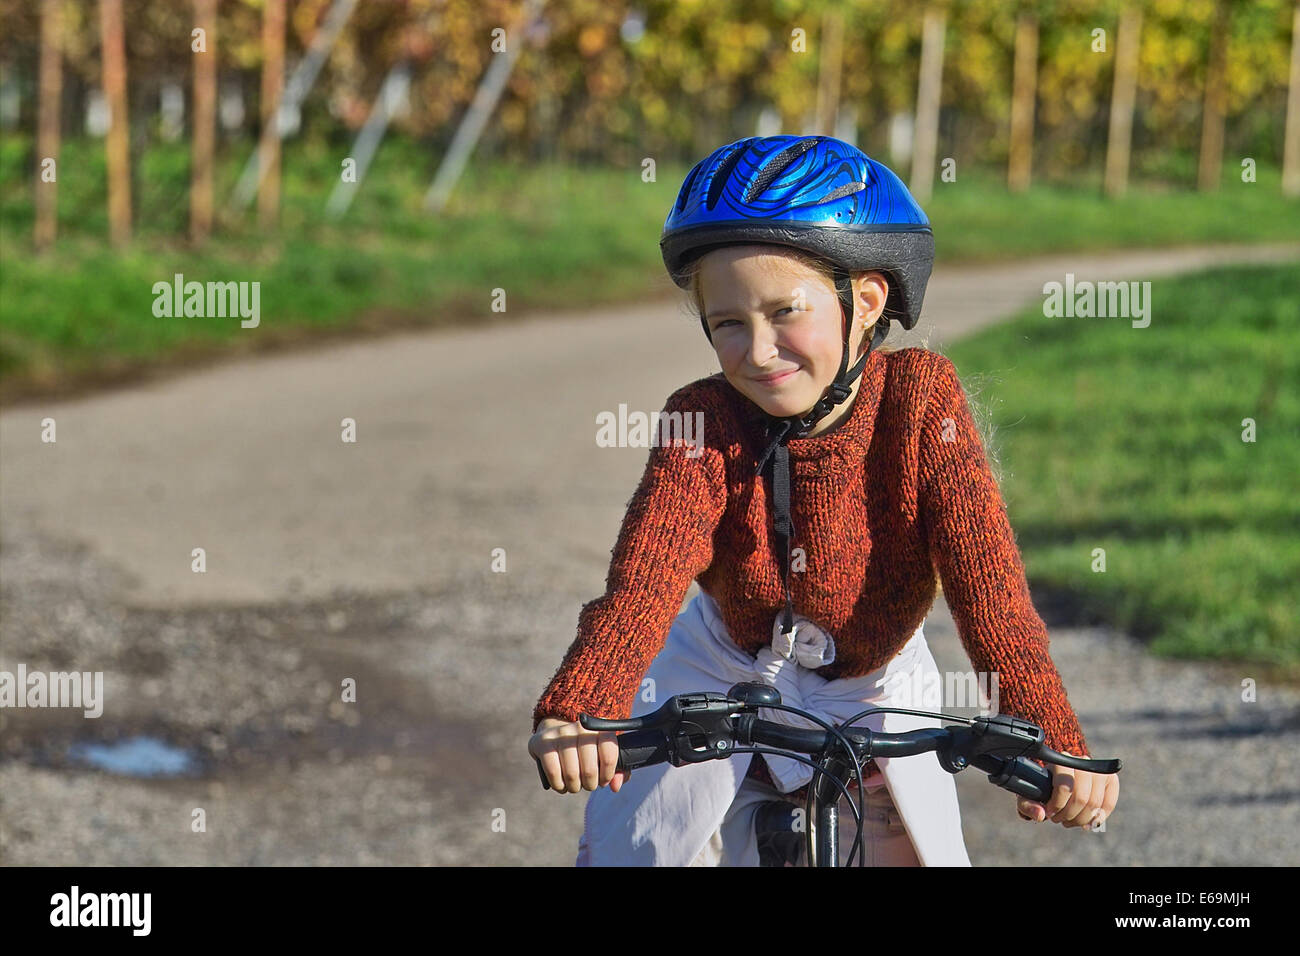 Girl,casque de vélo, casque, casque de vélo, casque Banque D'Images